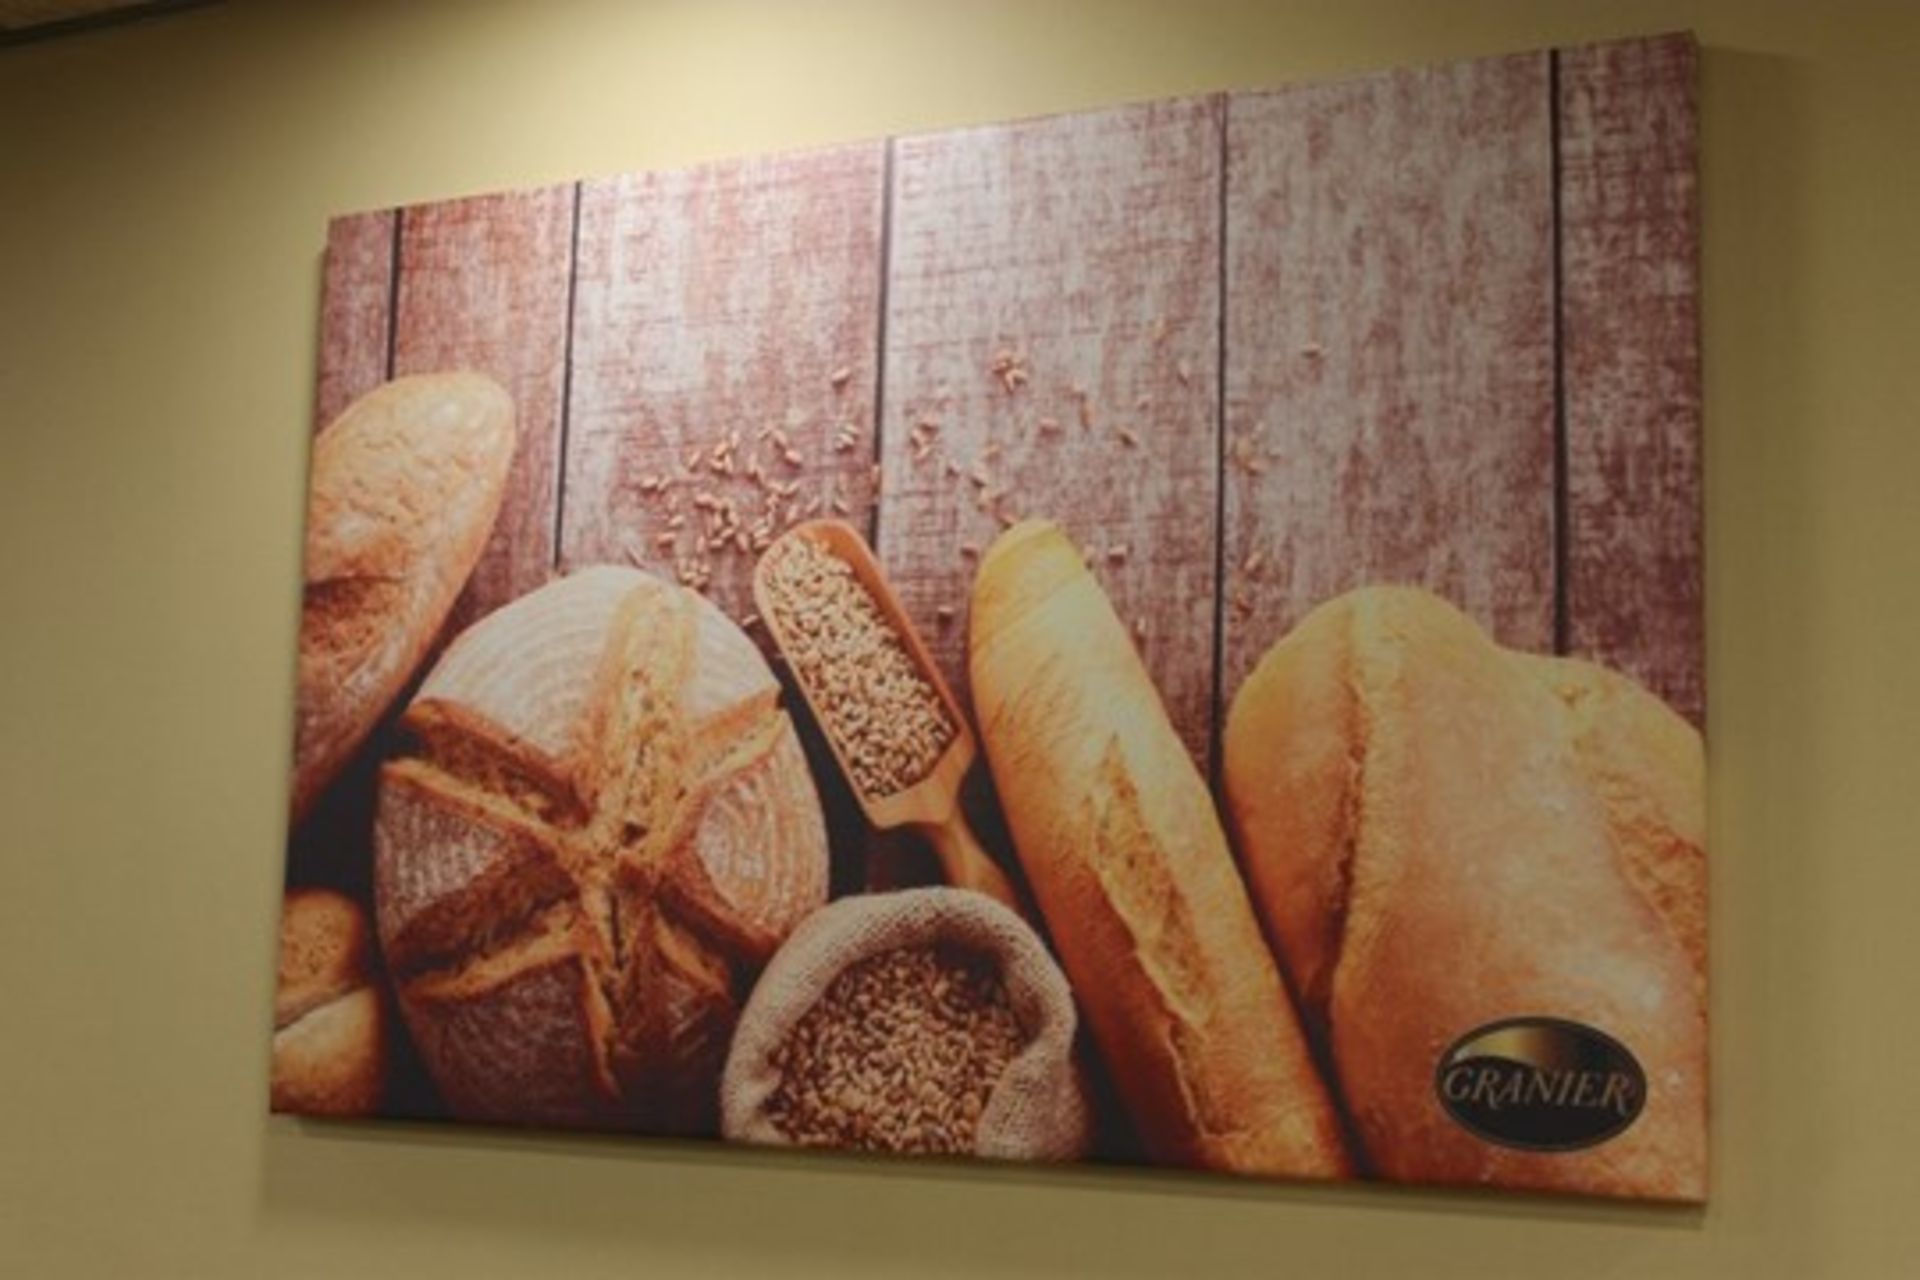 Four Bakery / Café Canvas Wall Prints -W130cm x H90cm - Image 2 of 4